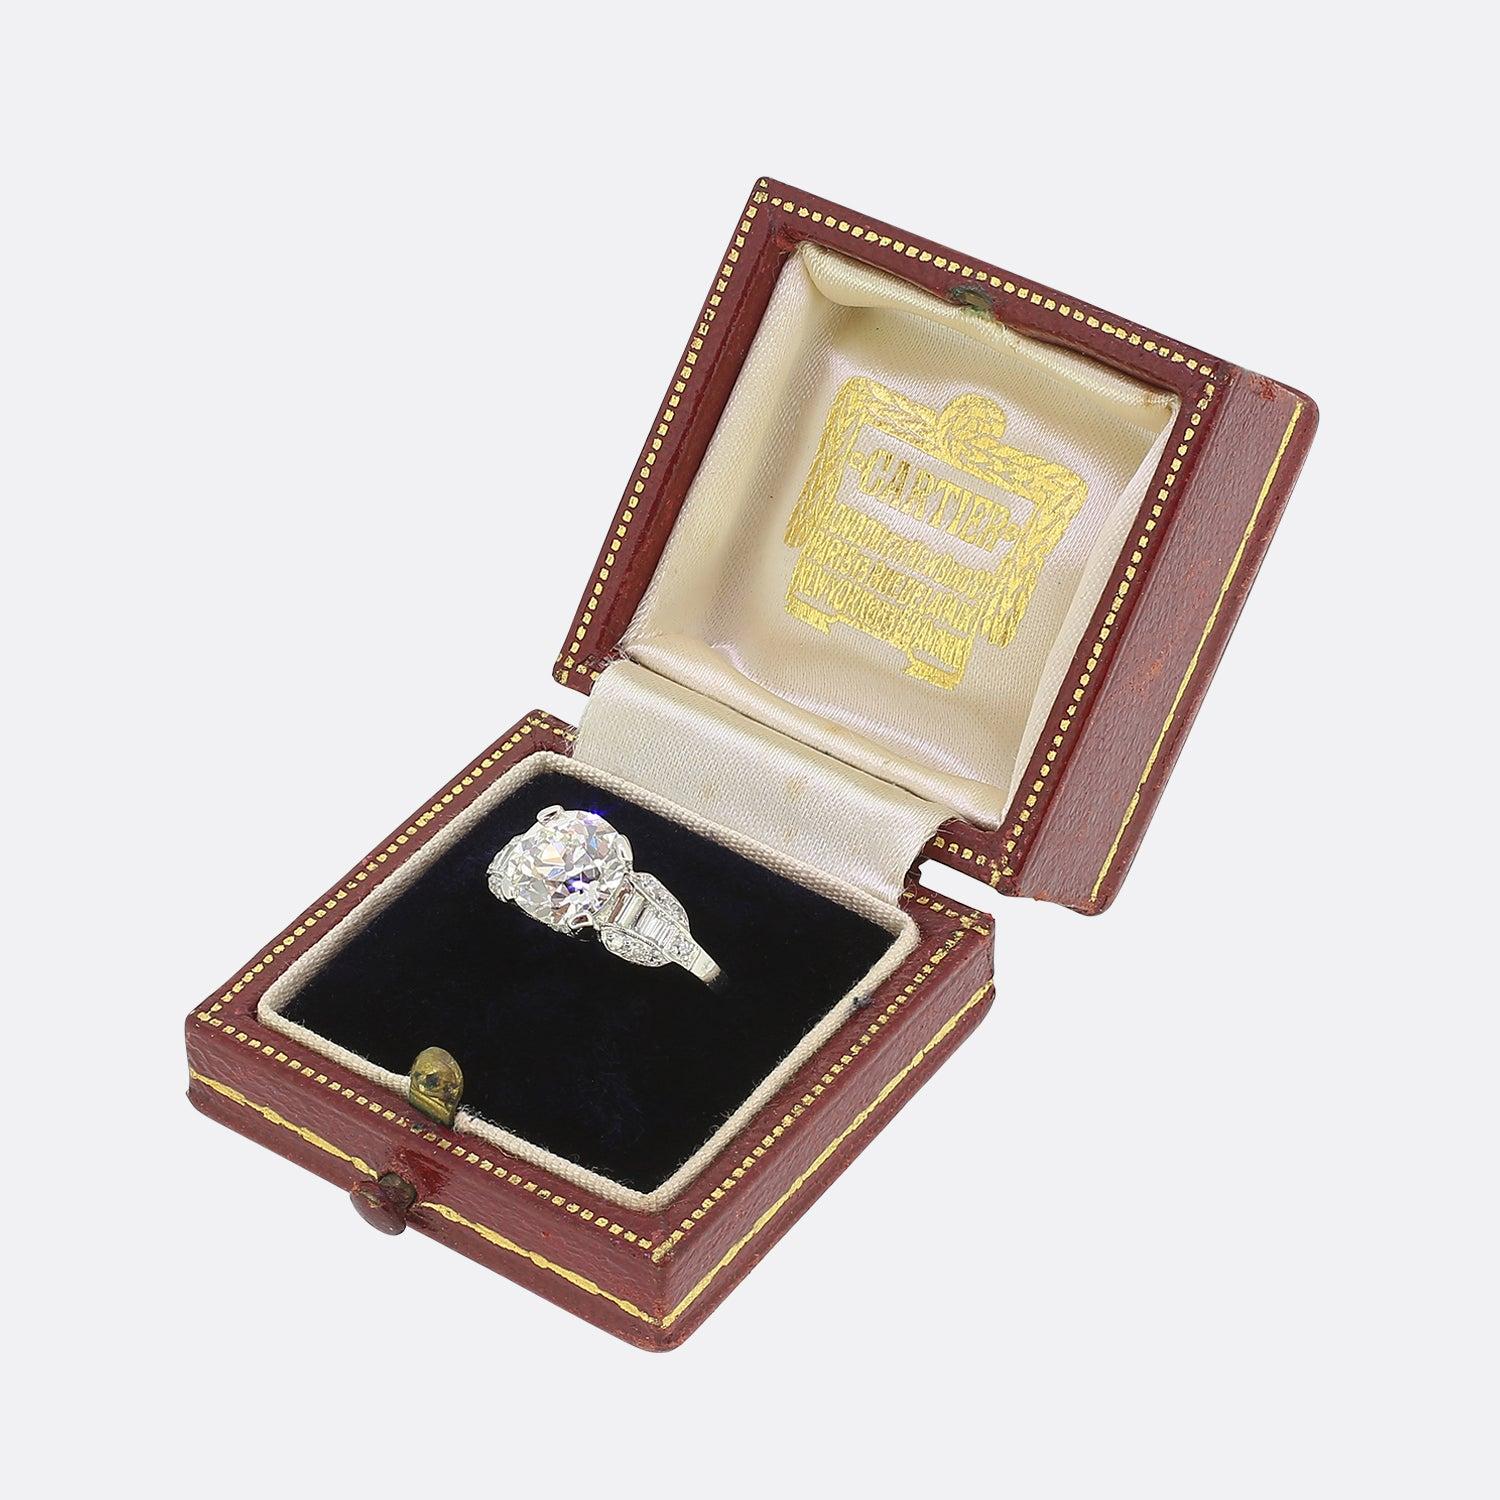 Hier haben wir einen wunderbaren diamantenen Verlobungsring aus dem weltbekannten Schmuckhaus Cartier. Dieses aus Platin gefertigte Schmuckstück aus der Blütezeit des Art déco-Stils zeigt einen einzelnen runden, facettierten Diamanten im